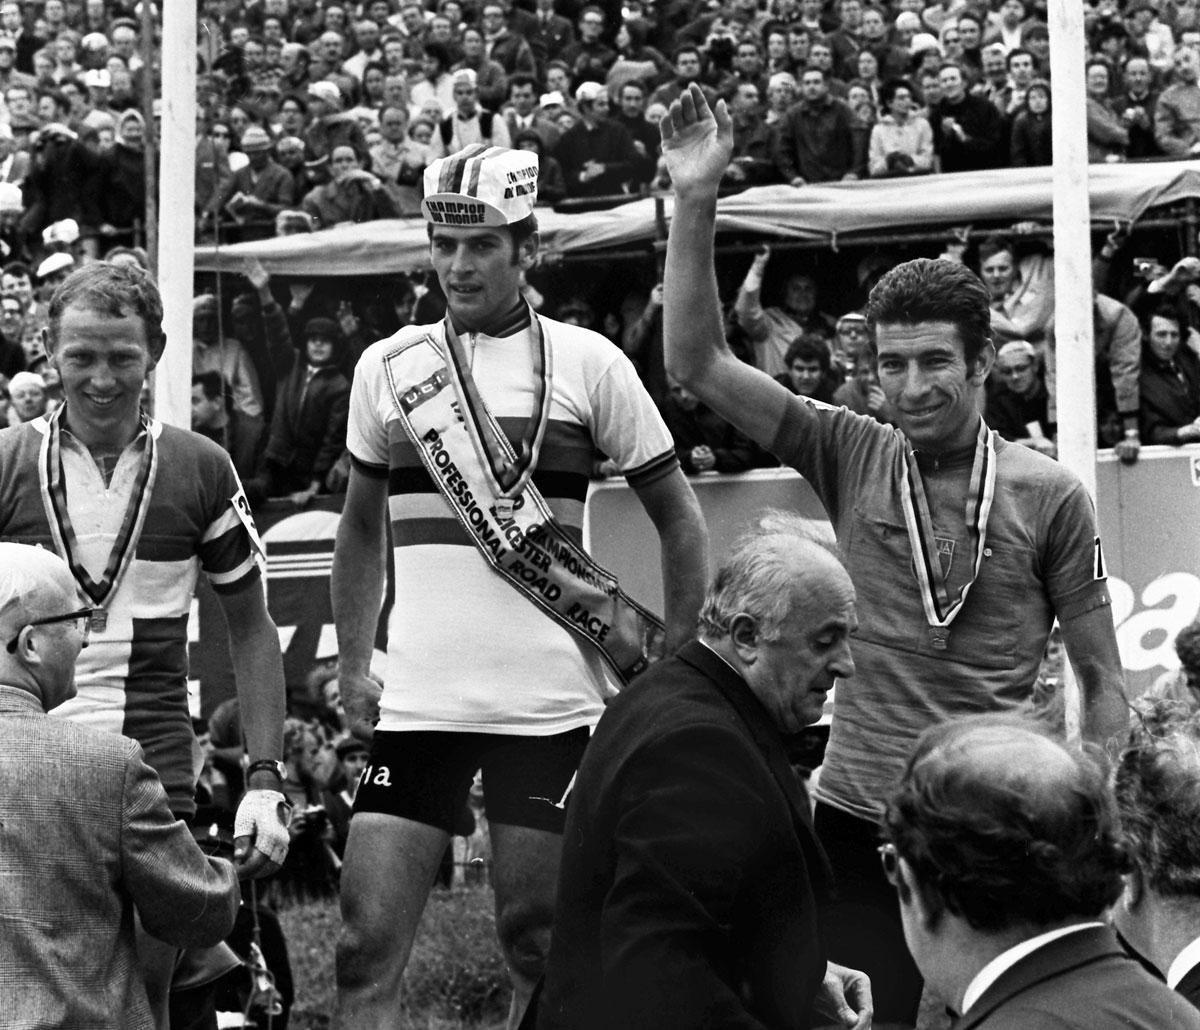 Le premier grand fait d'armes de Jean-Pierre Monseré: il devient champion du monde en 1970, devant le Danois Leif Mortensen (à gauche) et l'Italien Felice Gimondi.